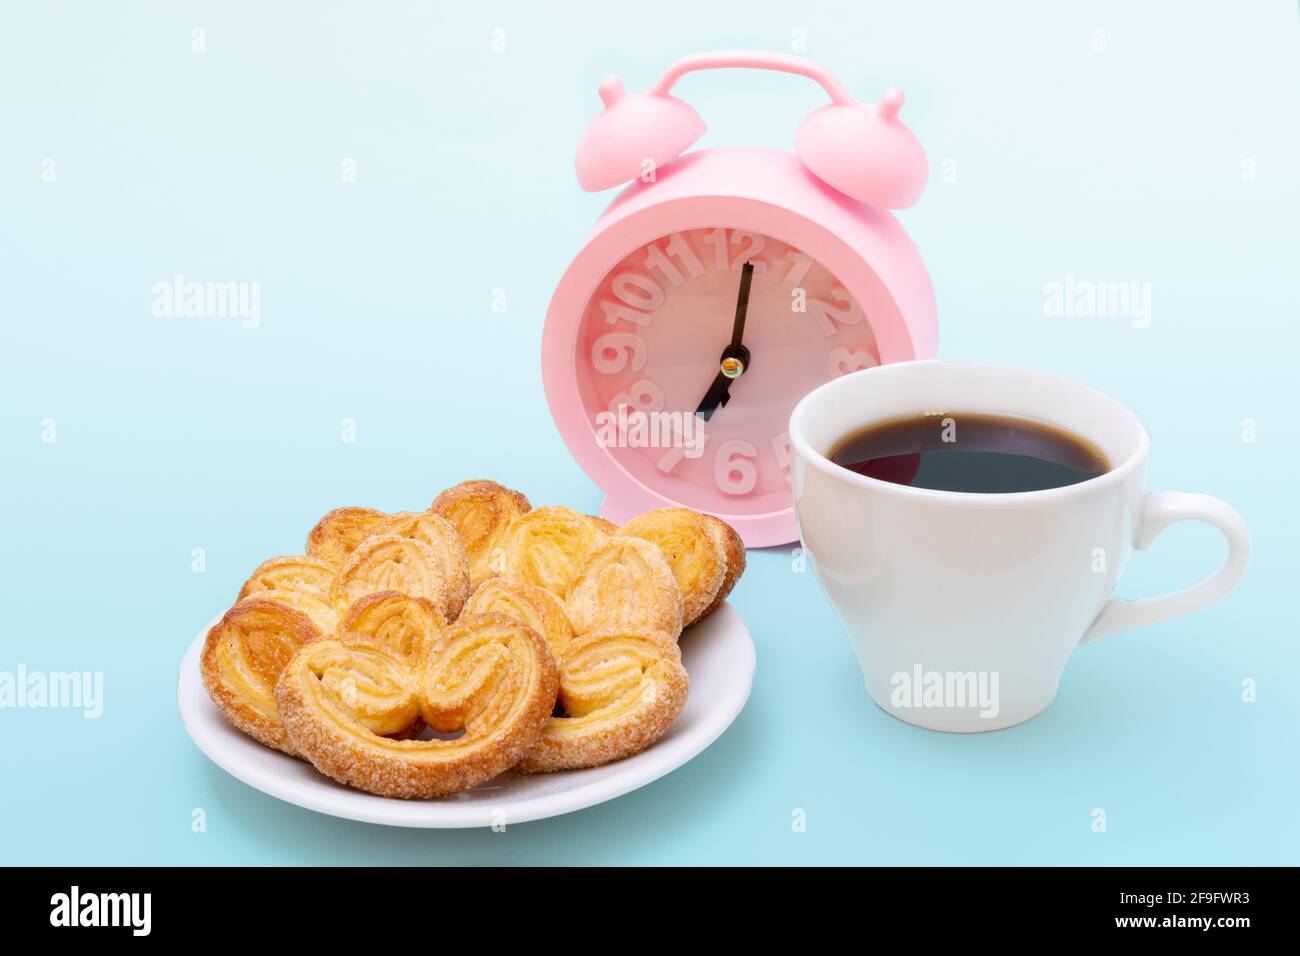 Weiße Tasse dampfenden heißen schwarzen Kaffee oder heiße Schokolade, frisch gebackene herzförmige Kekse und rosa Wecker auf hellblauem Hintergrund, Kopierraum. Stockfoto